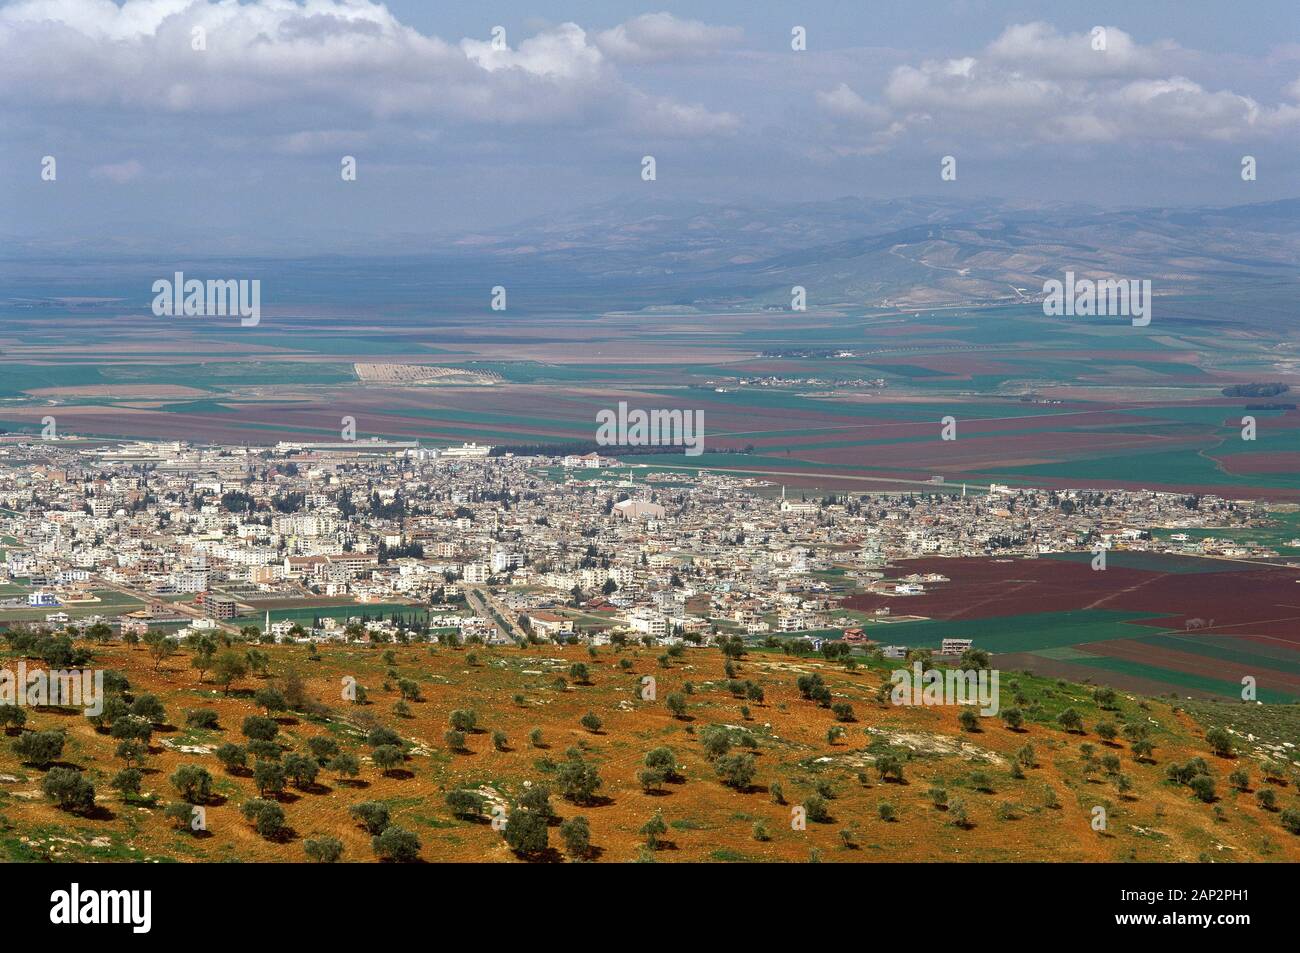 Arabische Republik Syrien. Panoramicl Blick auf das Grenzgebiet zwischen der Türkei und Syrien. Foto vor dem syrischen Bürgerkrieg. Stockfoto